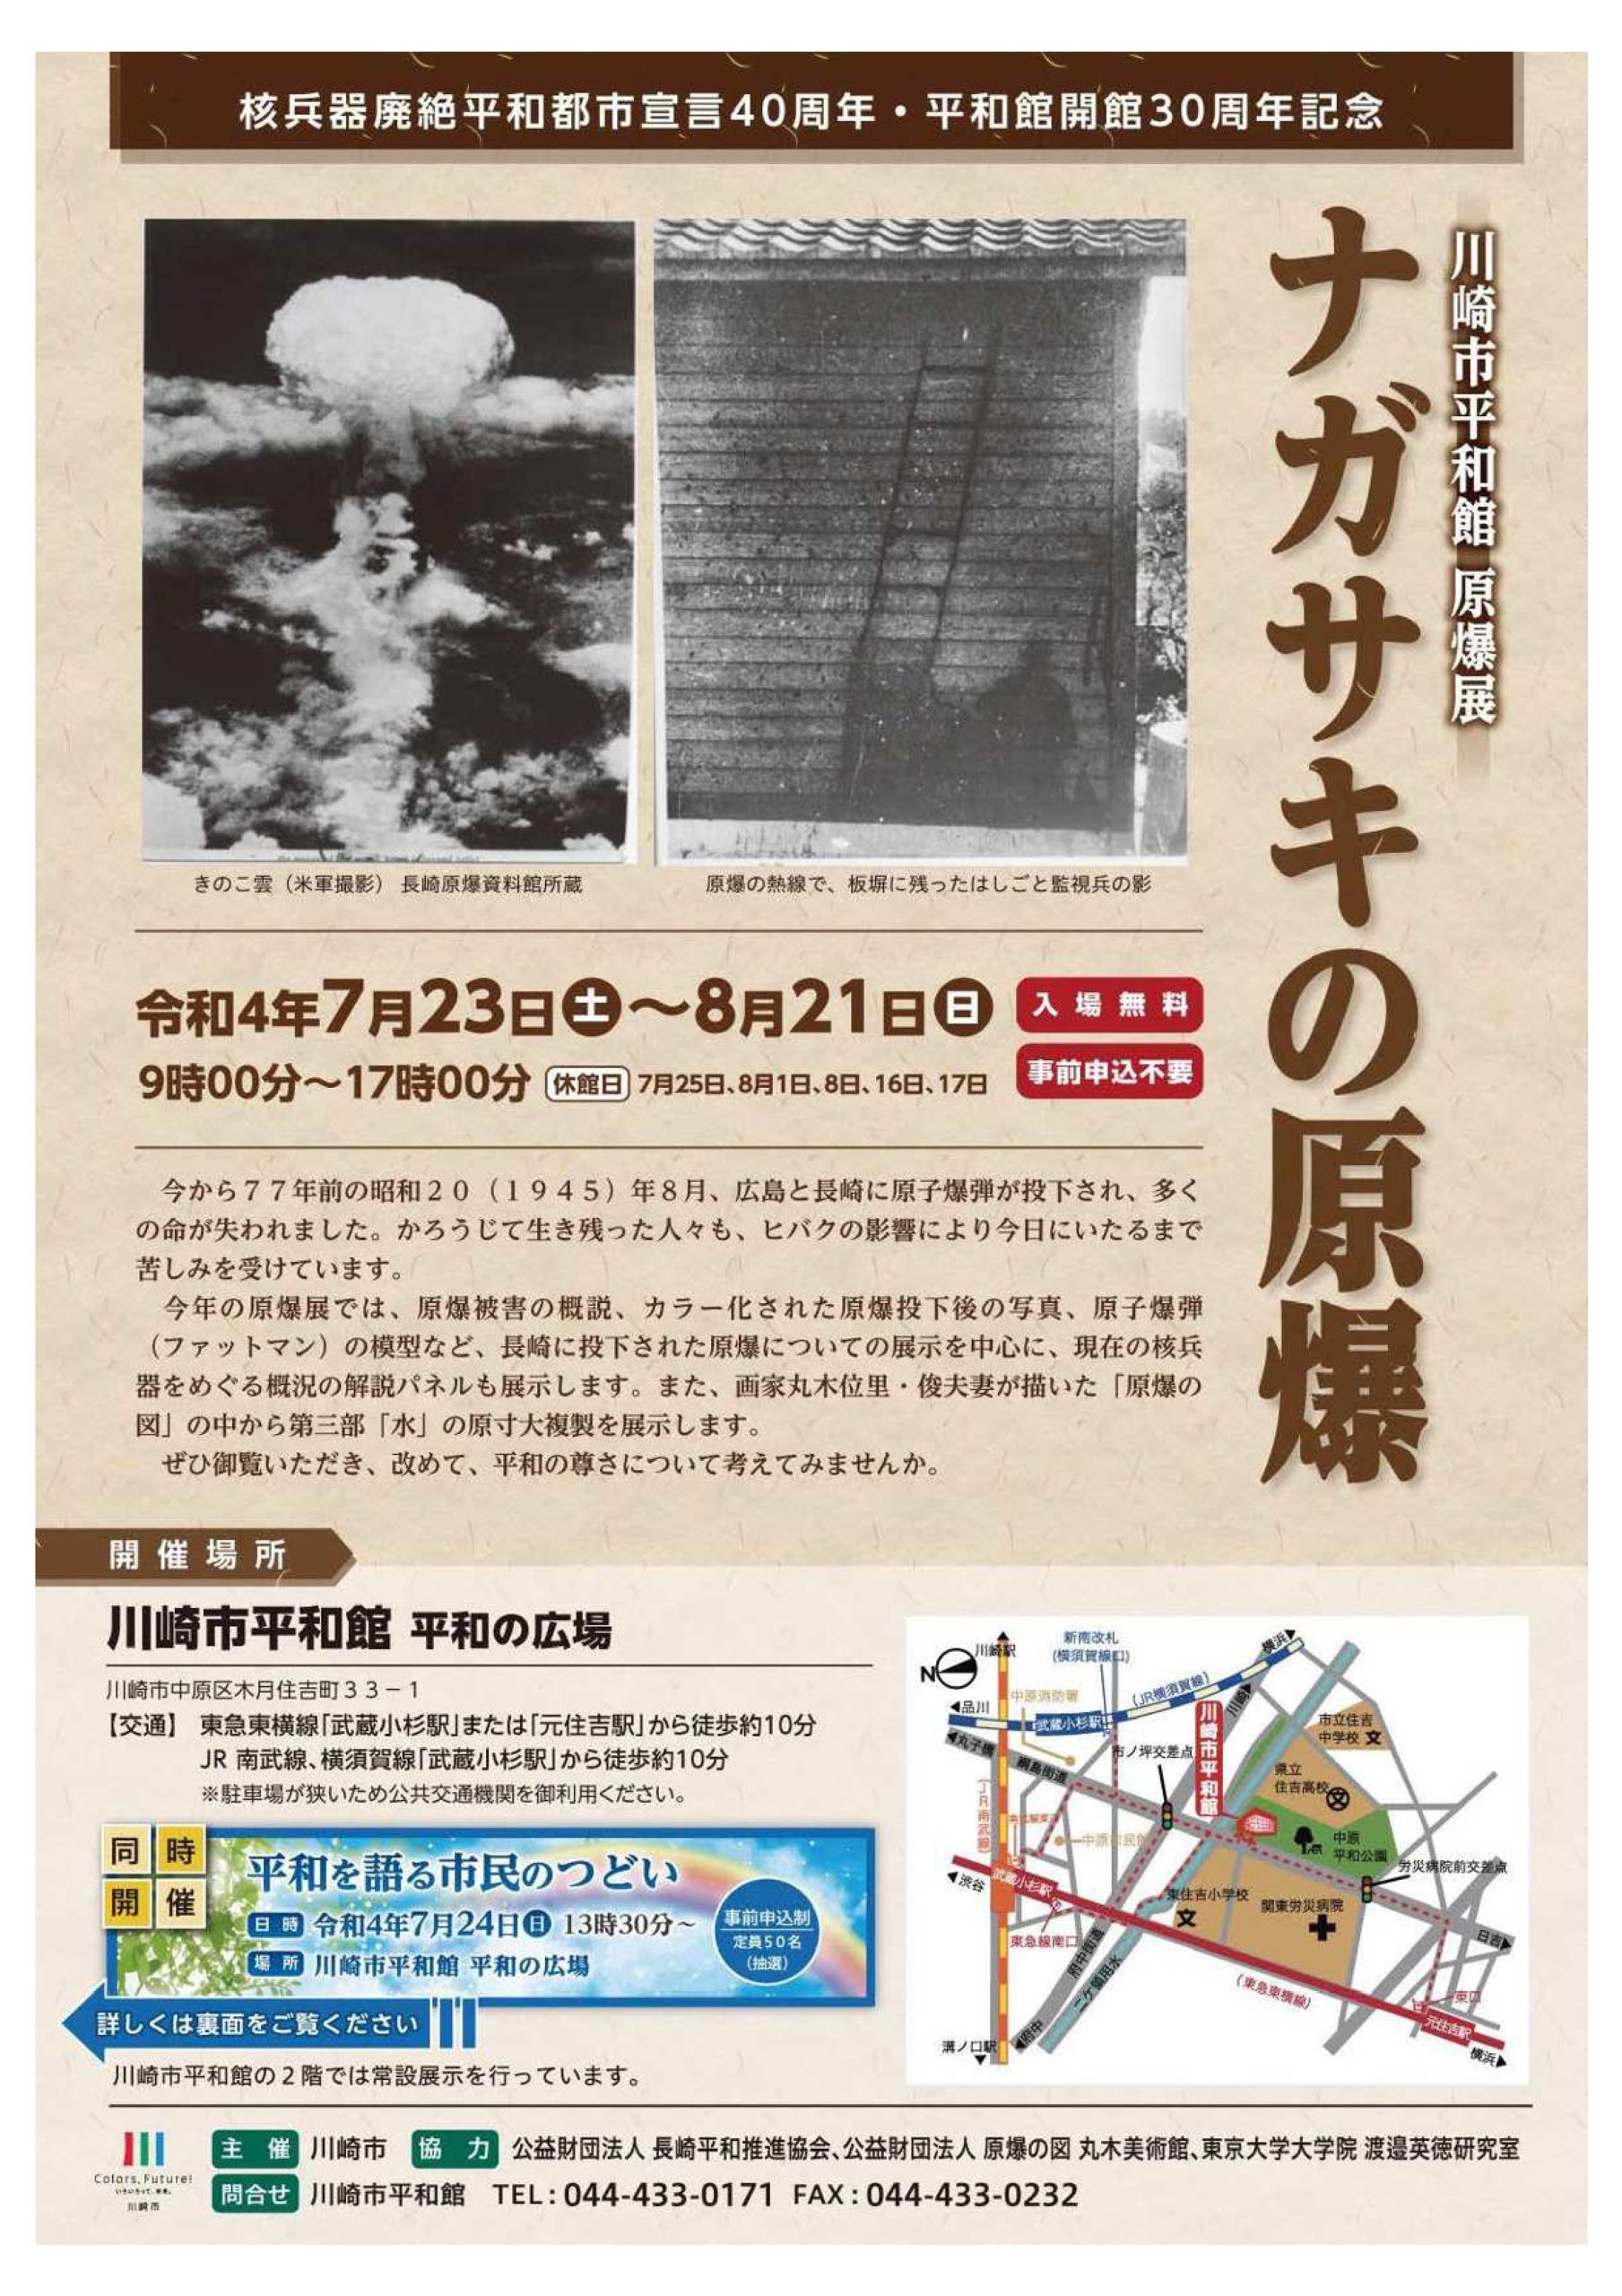 川崎市平和館原爆展「長崎の原爆」